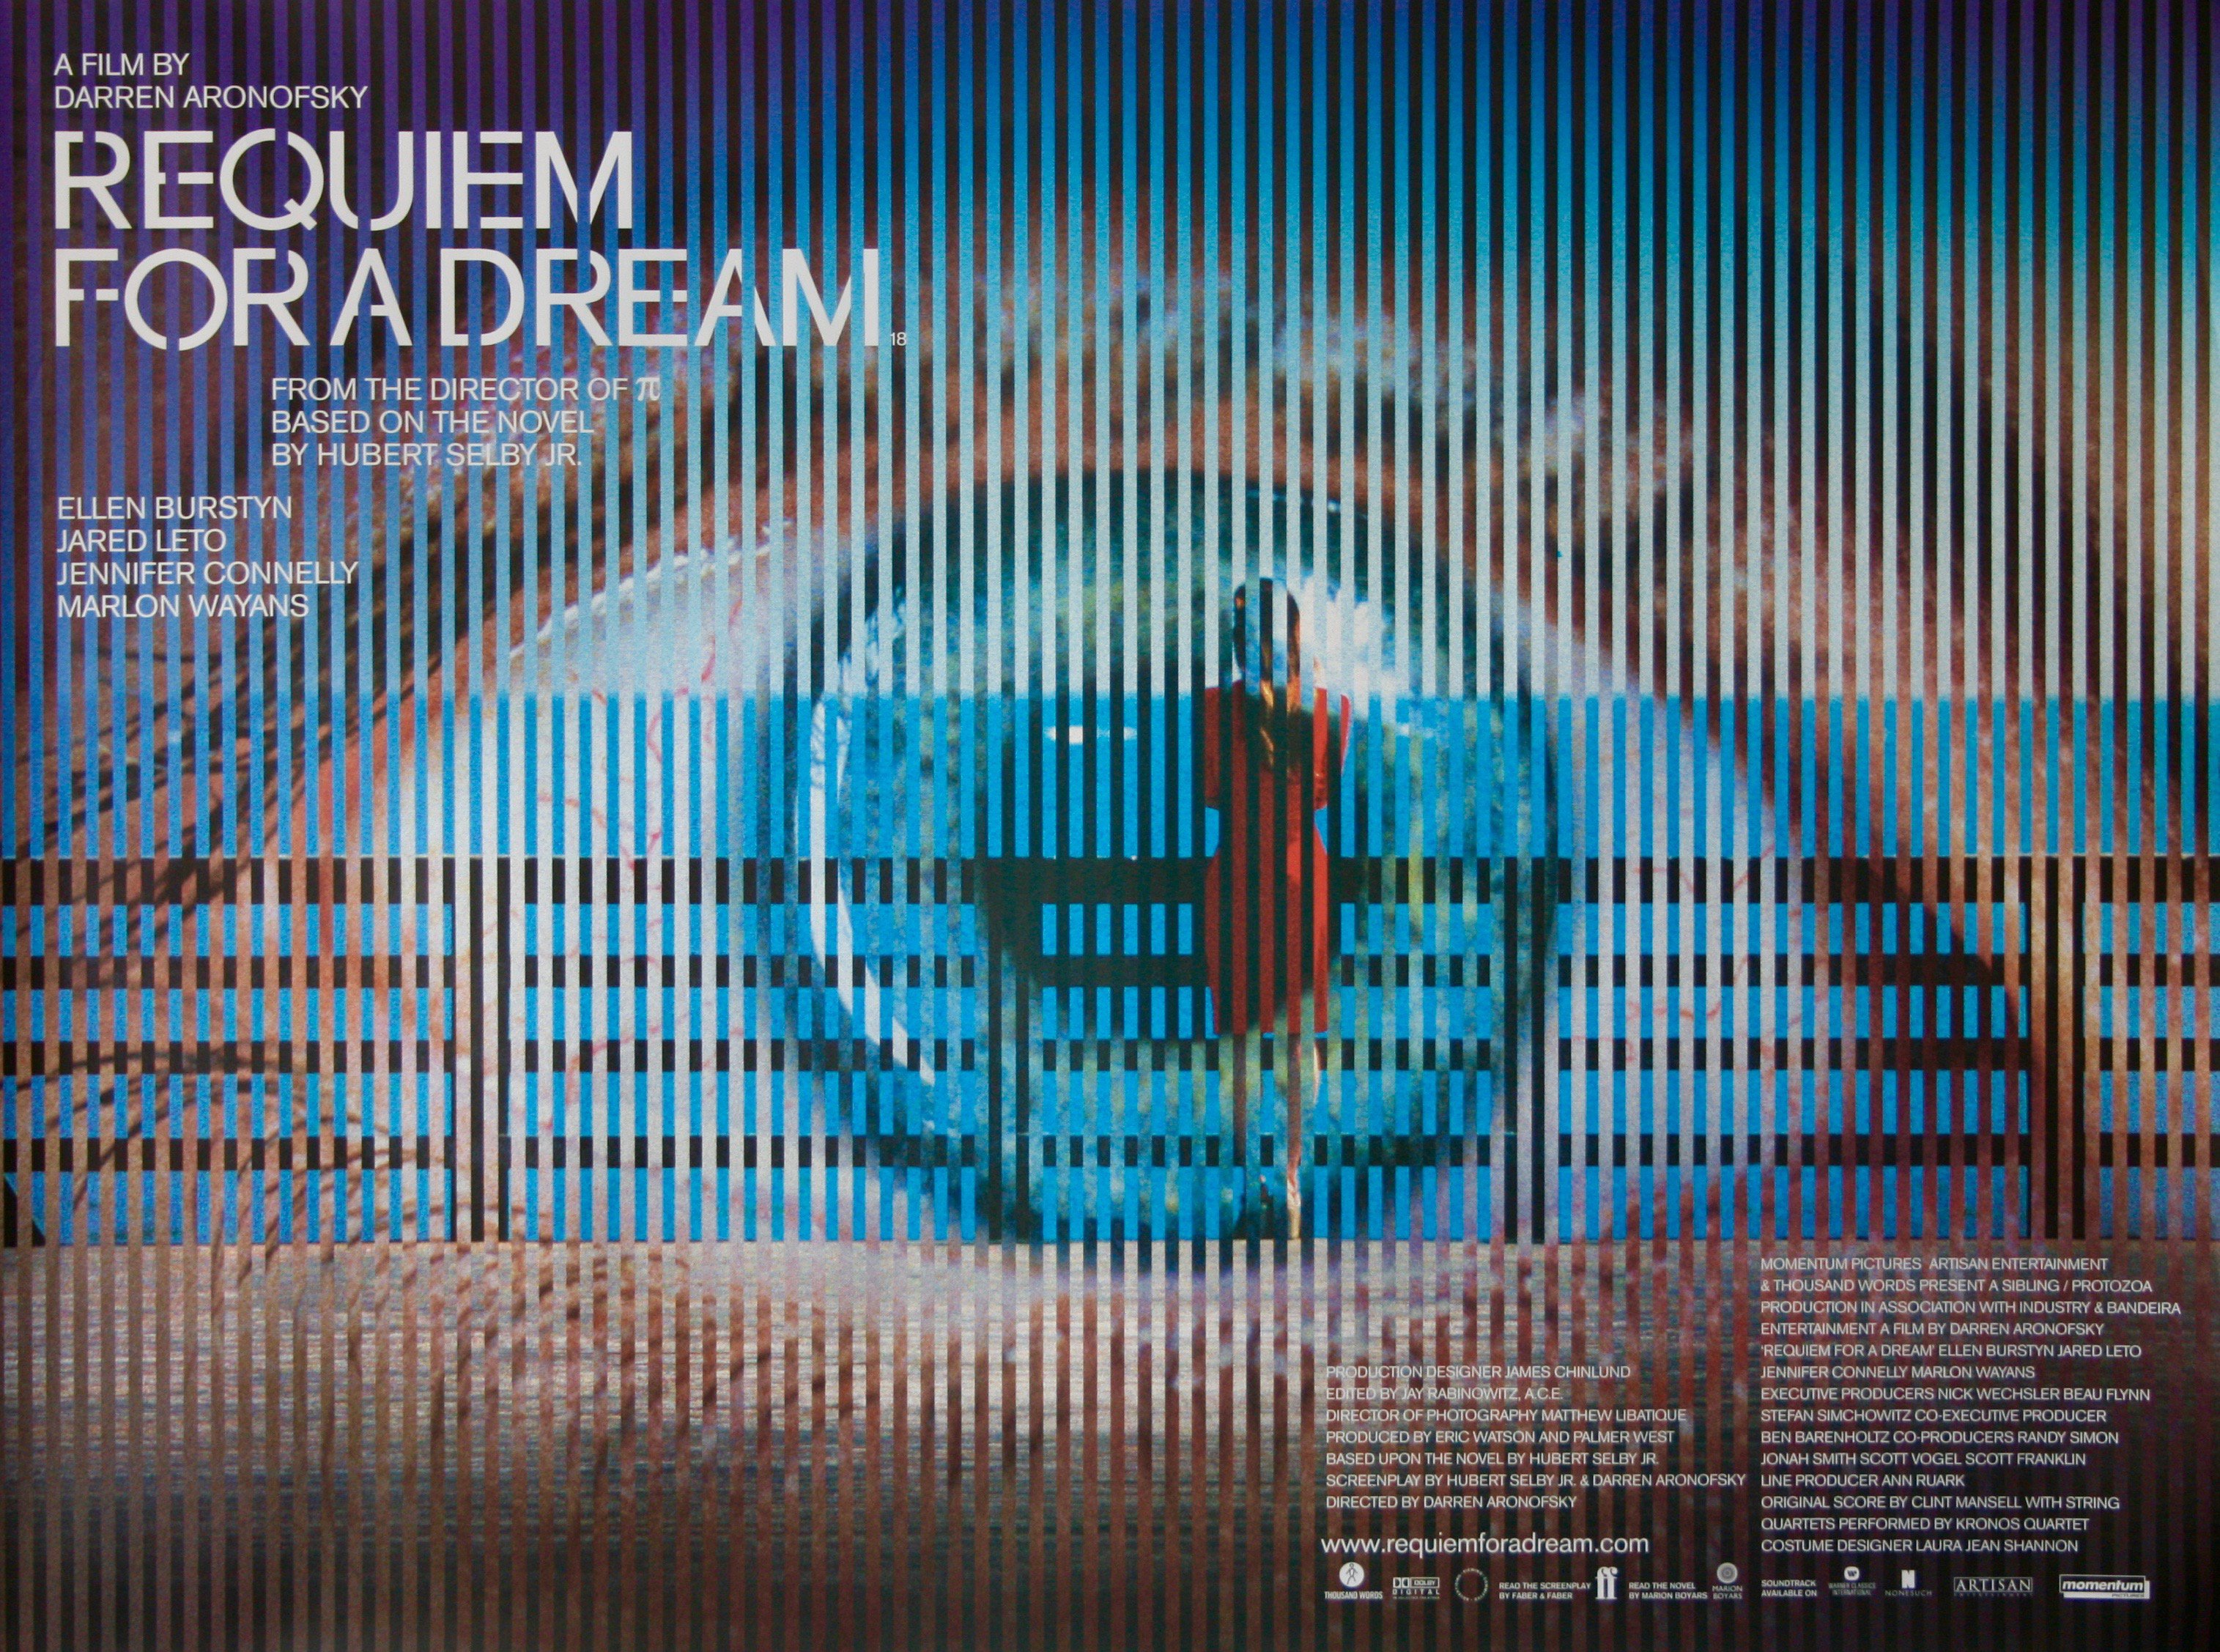  Requiem For a Dream movie quad poster